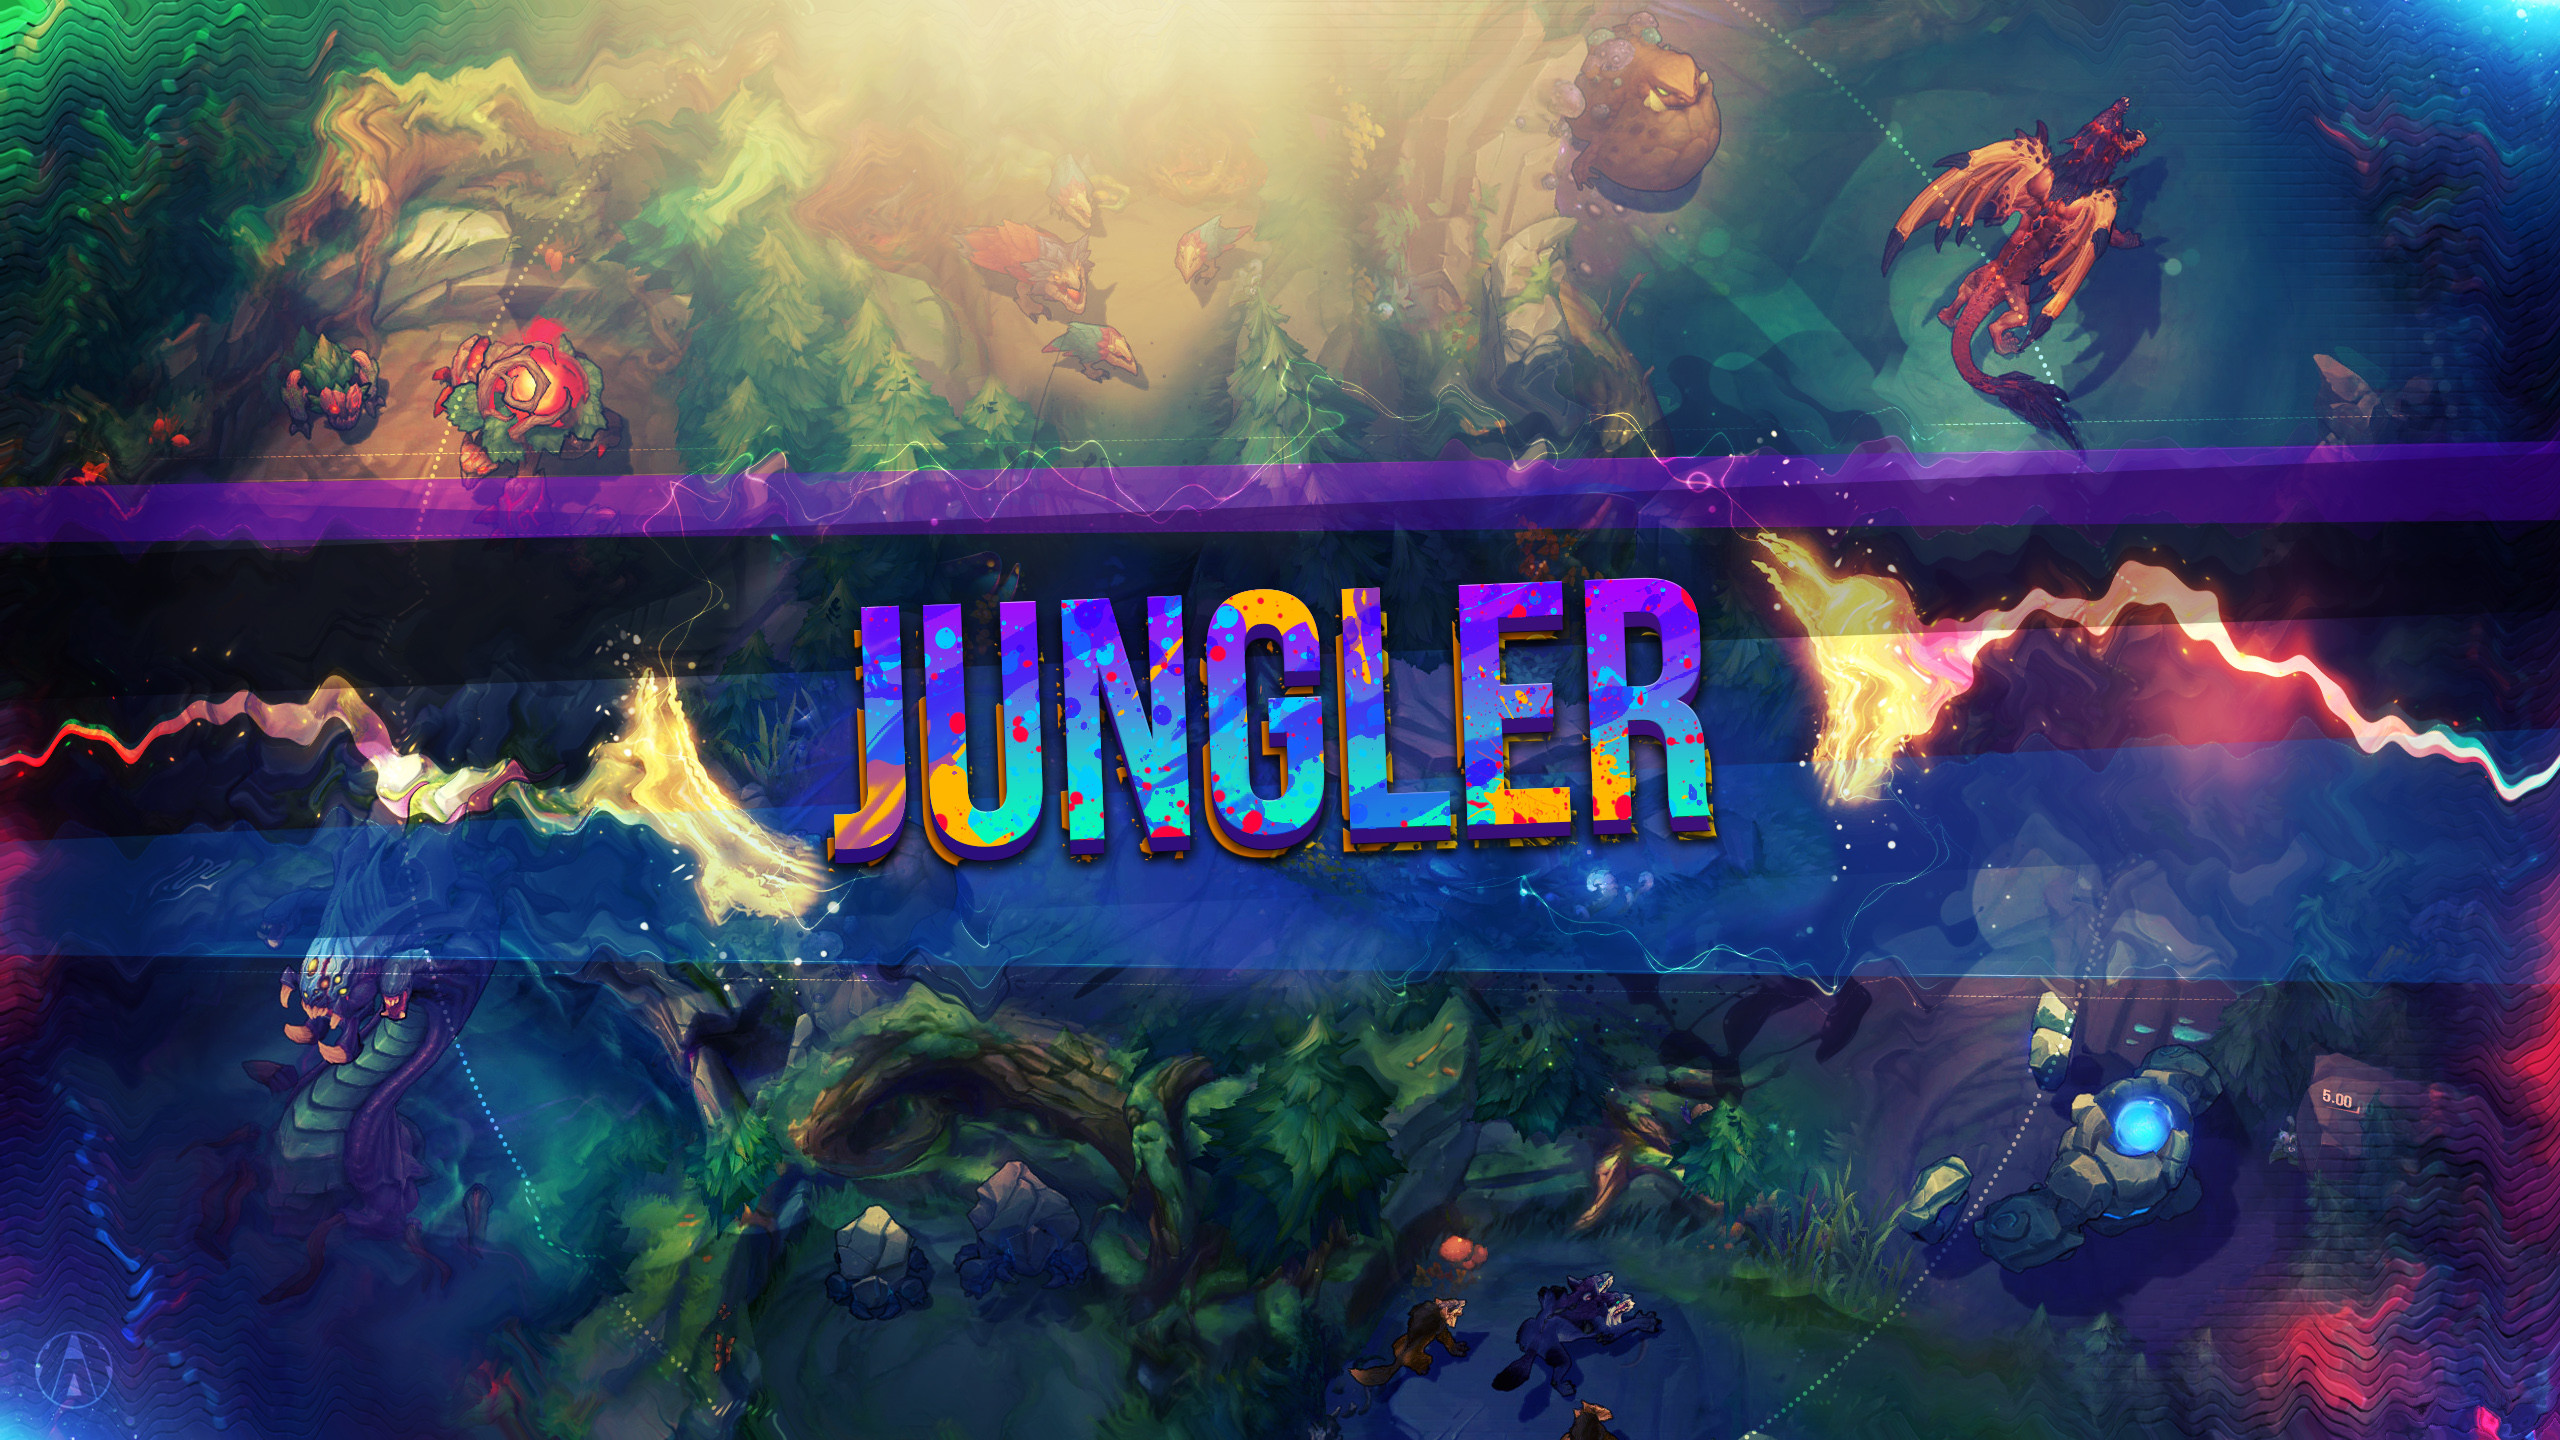 2560x1440 Jungle by Aynoe HD Wallpaper Fan Art Artwork League of Legends lol